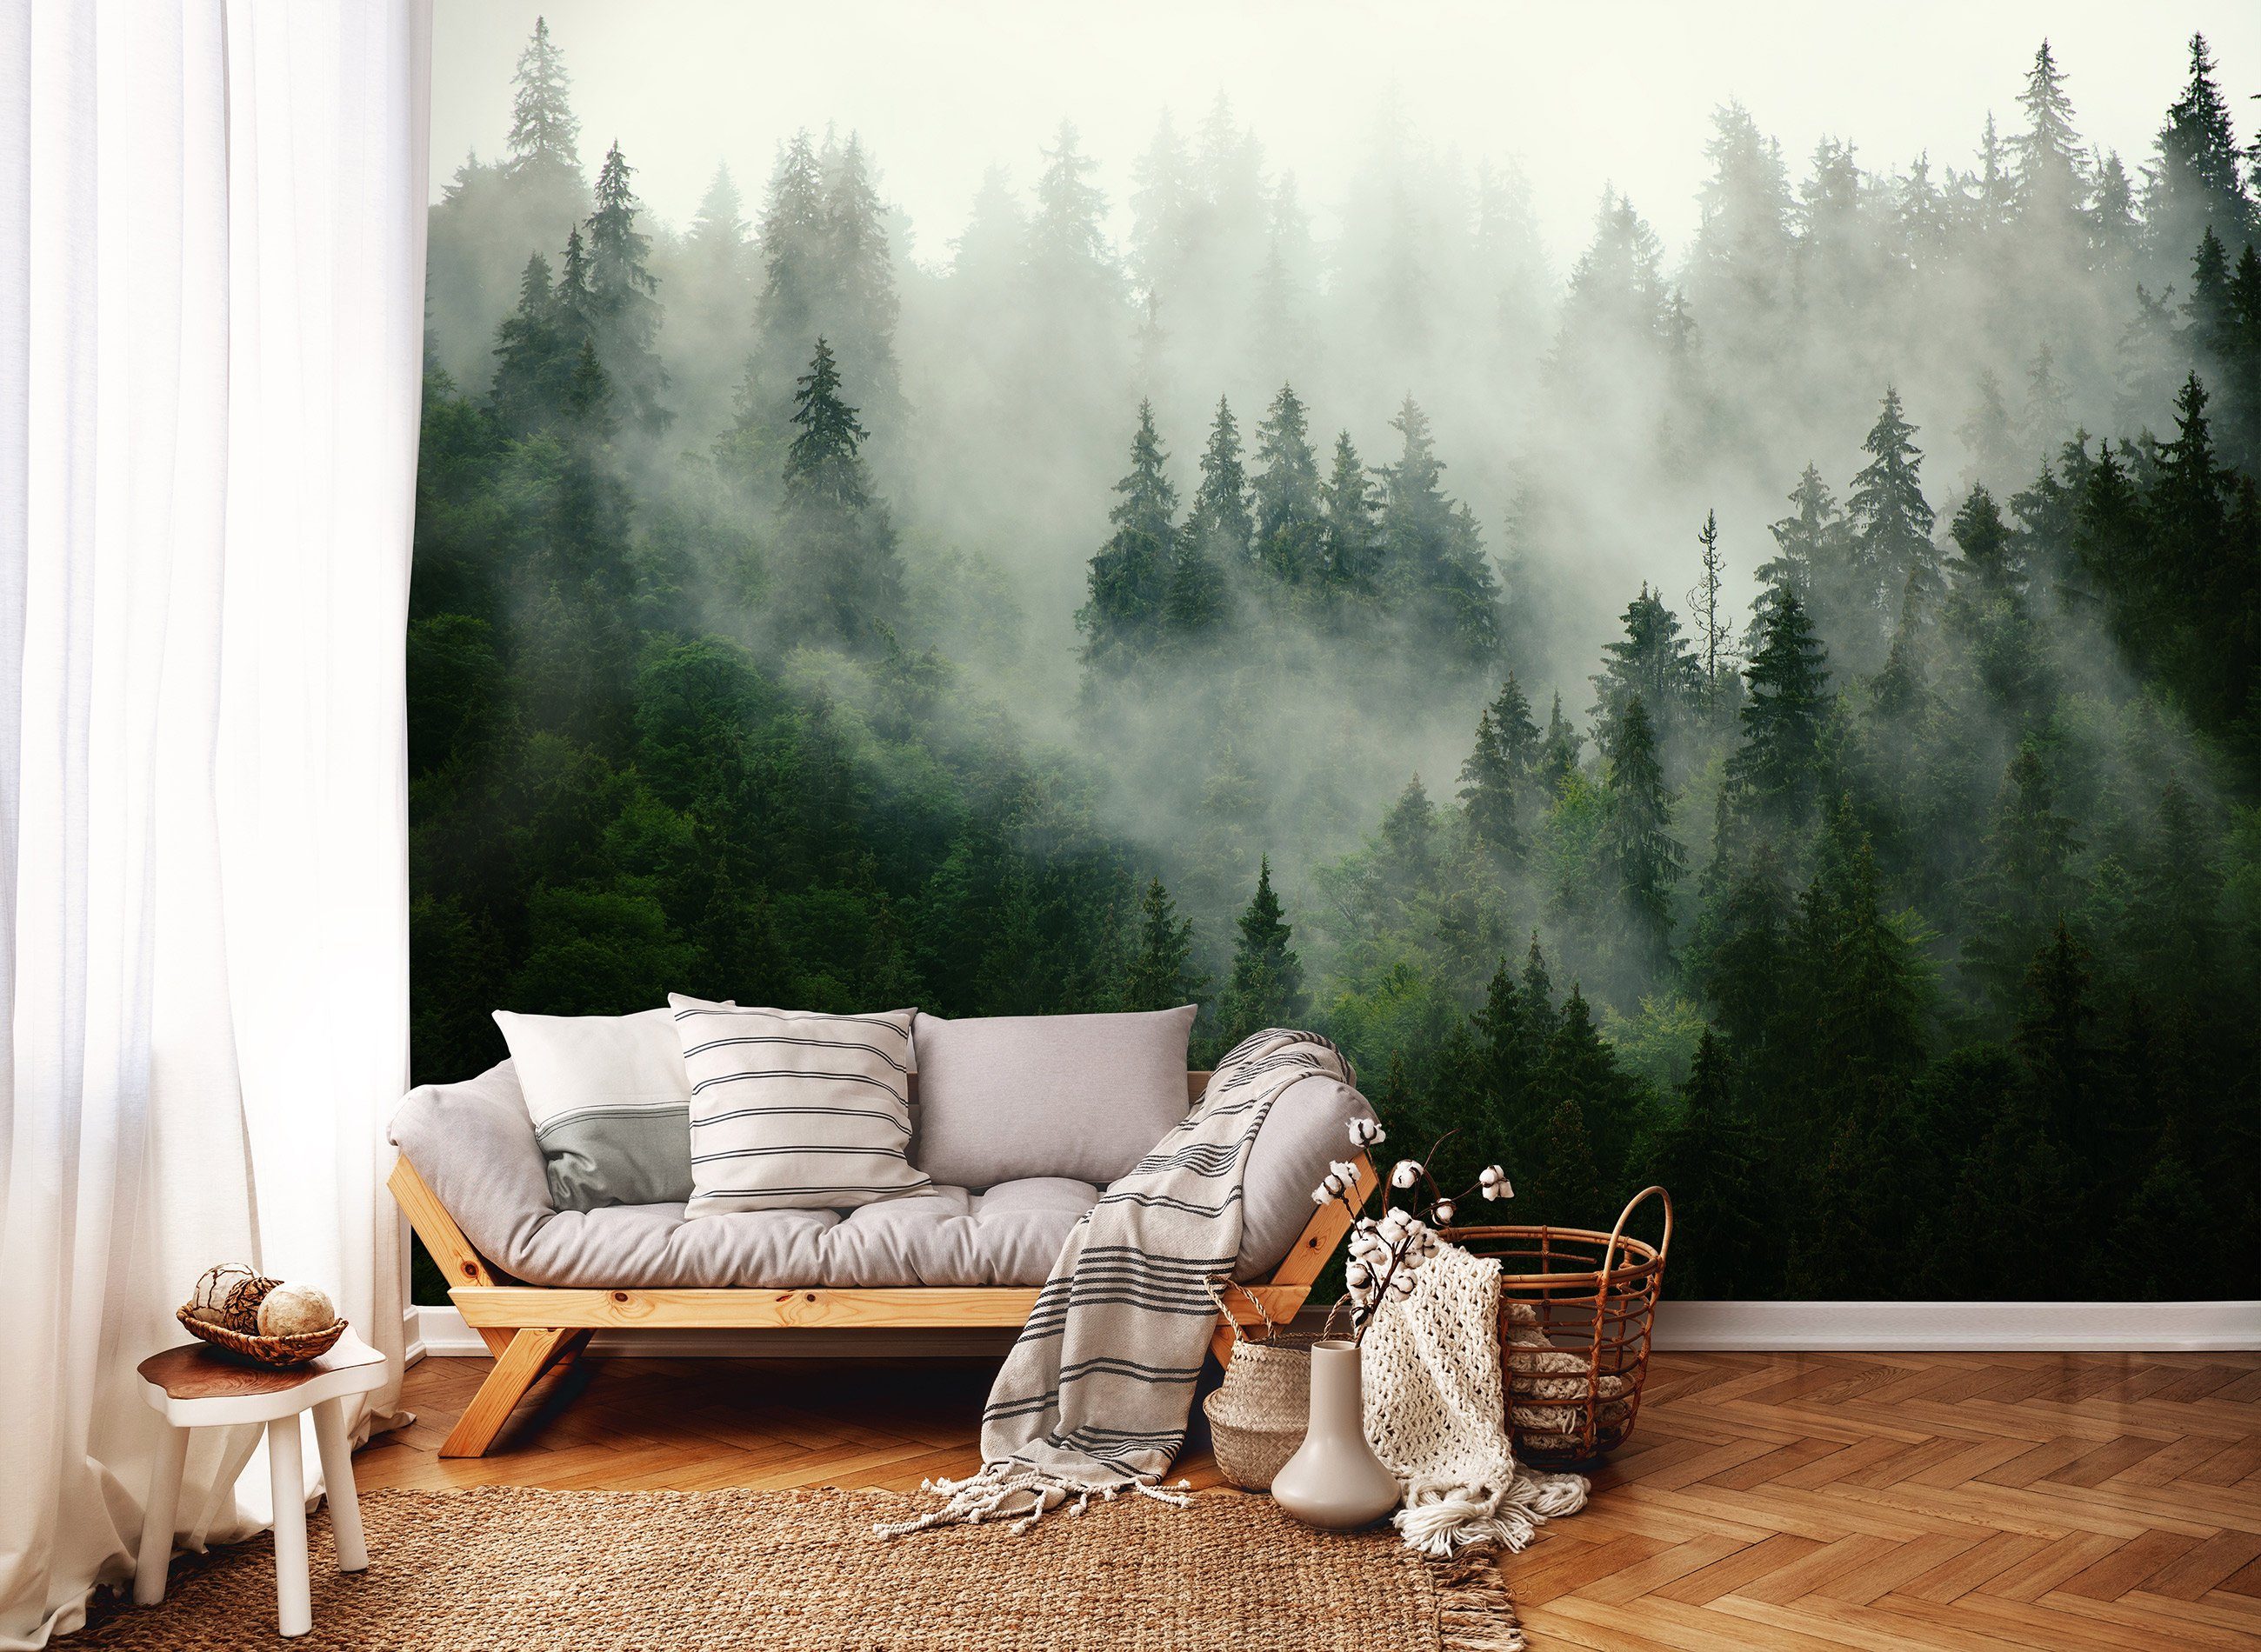 Schlafzimmer Wallarena inklusive Vlies Fototapete oder Wald, EFFEKT Wohnzimmer 3D Kleister Vliestapete im Motivtapete, Natur Wandtapete Vliestapete Wald Tapete Nebel Glatt, für